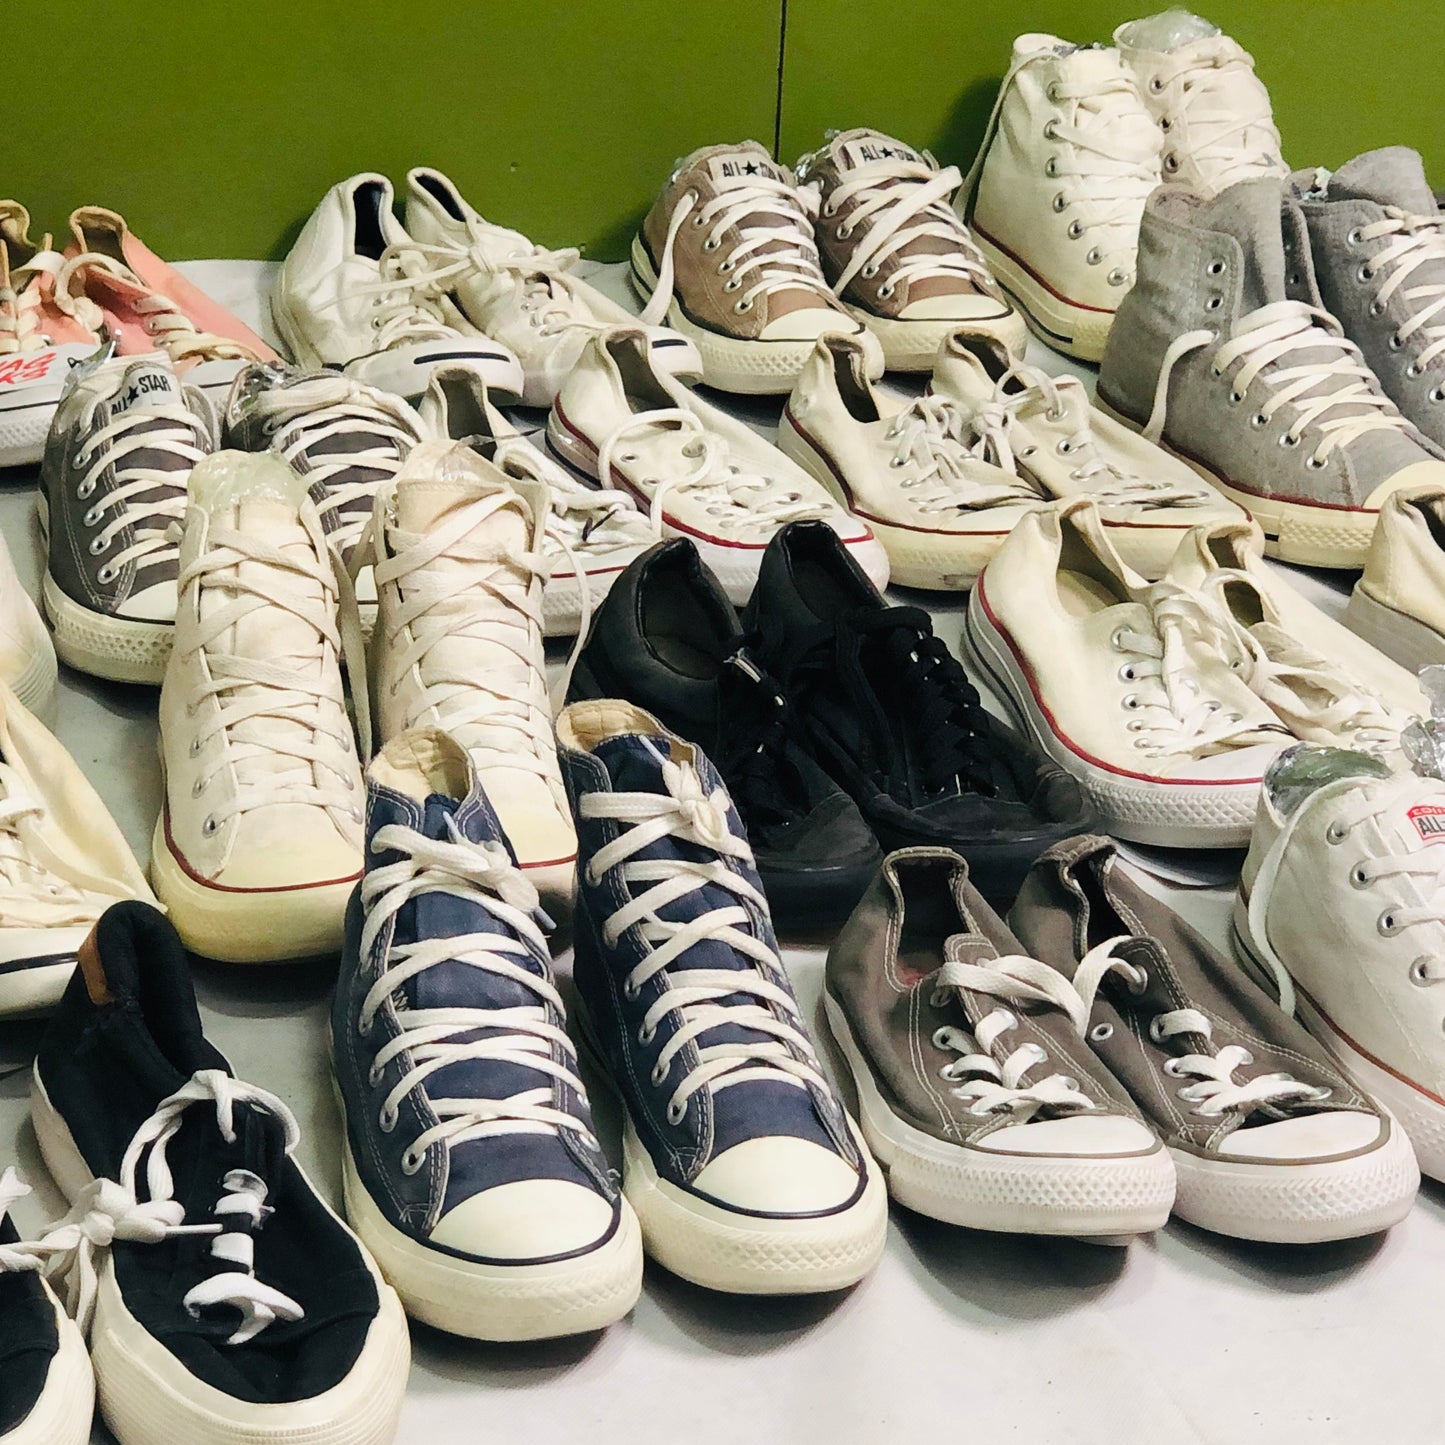 All Star Converse / Vans Sneakers 20 Pairs